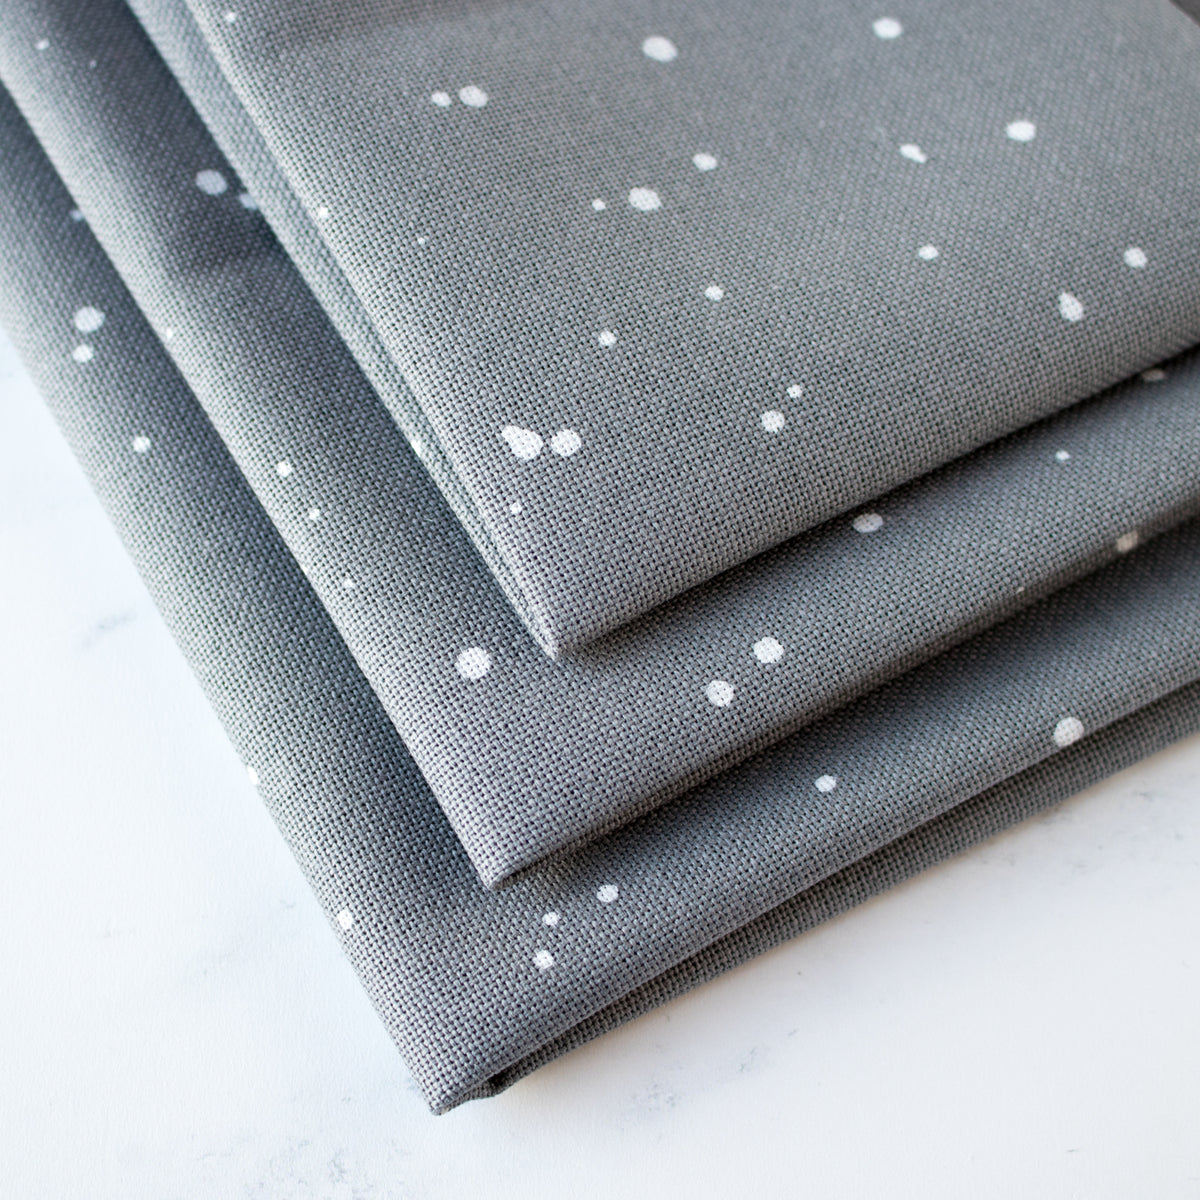 Evenweave Cross Stitch Fabric - Basalt Splash